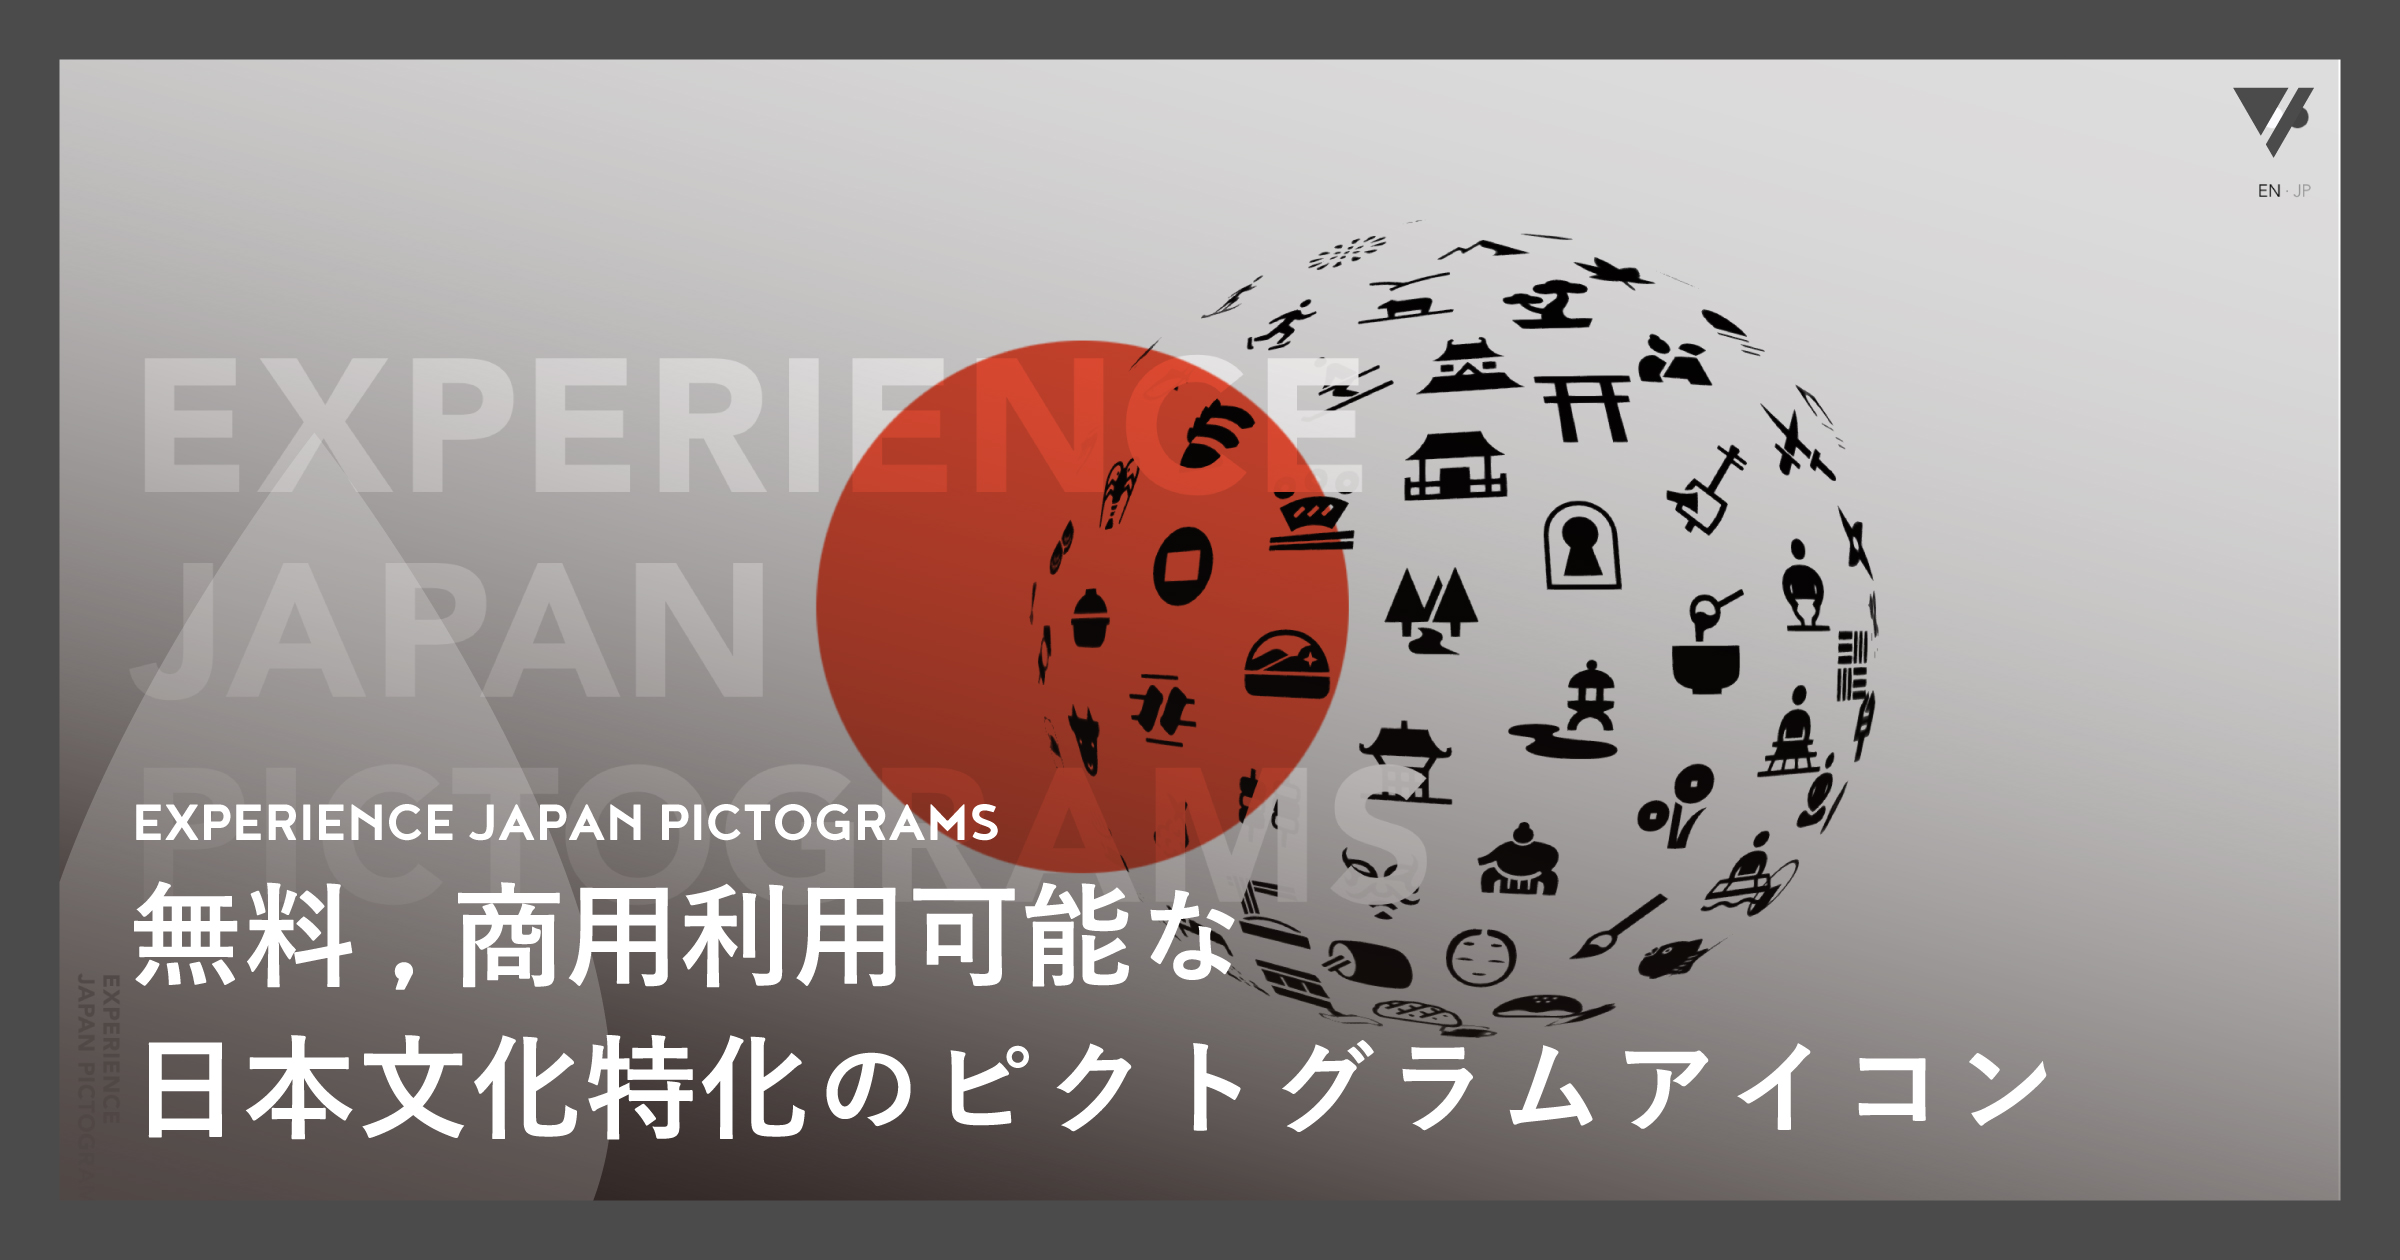 「無料,商用利用可能な日本文化特化のピクトグラムアイコン、EXPERIENCE JAPAN PICTOGRAMS」のアイキャッチ画像